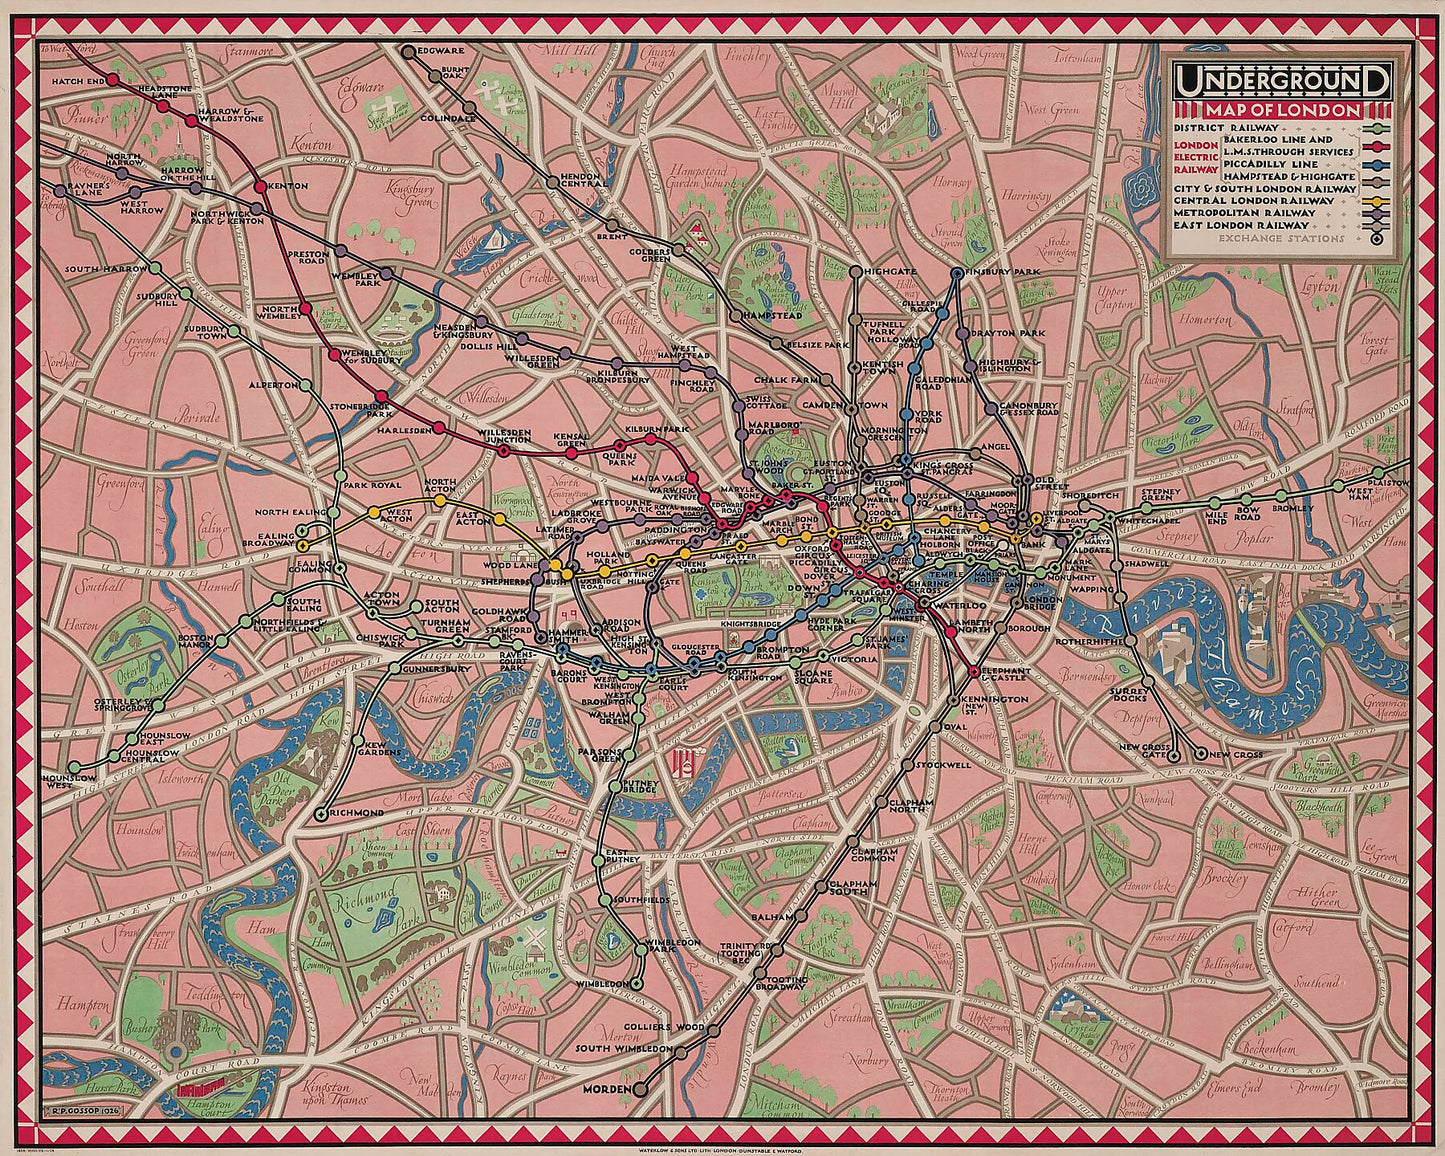 Underground Map of London by Reginald Percy Gossop (1876-1951) - 1926